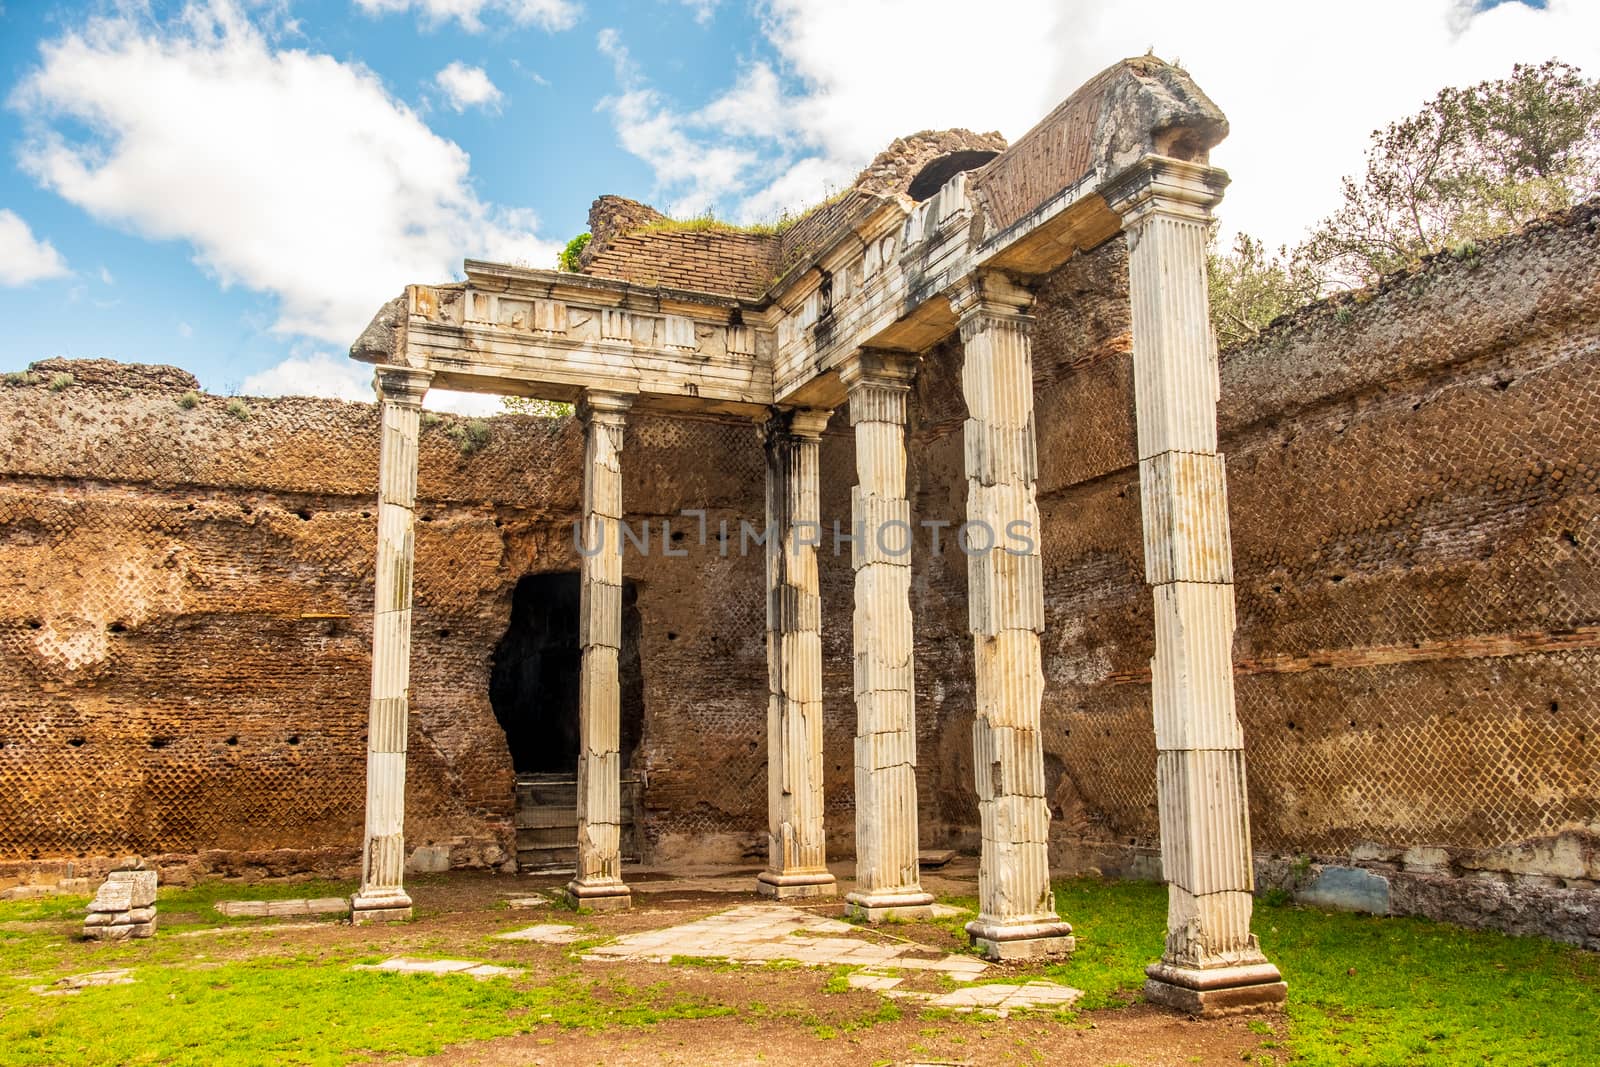 Villa Adriana roman ruins columns - Rome Tivoli - Italy .